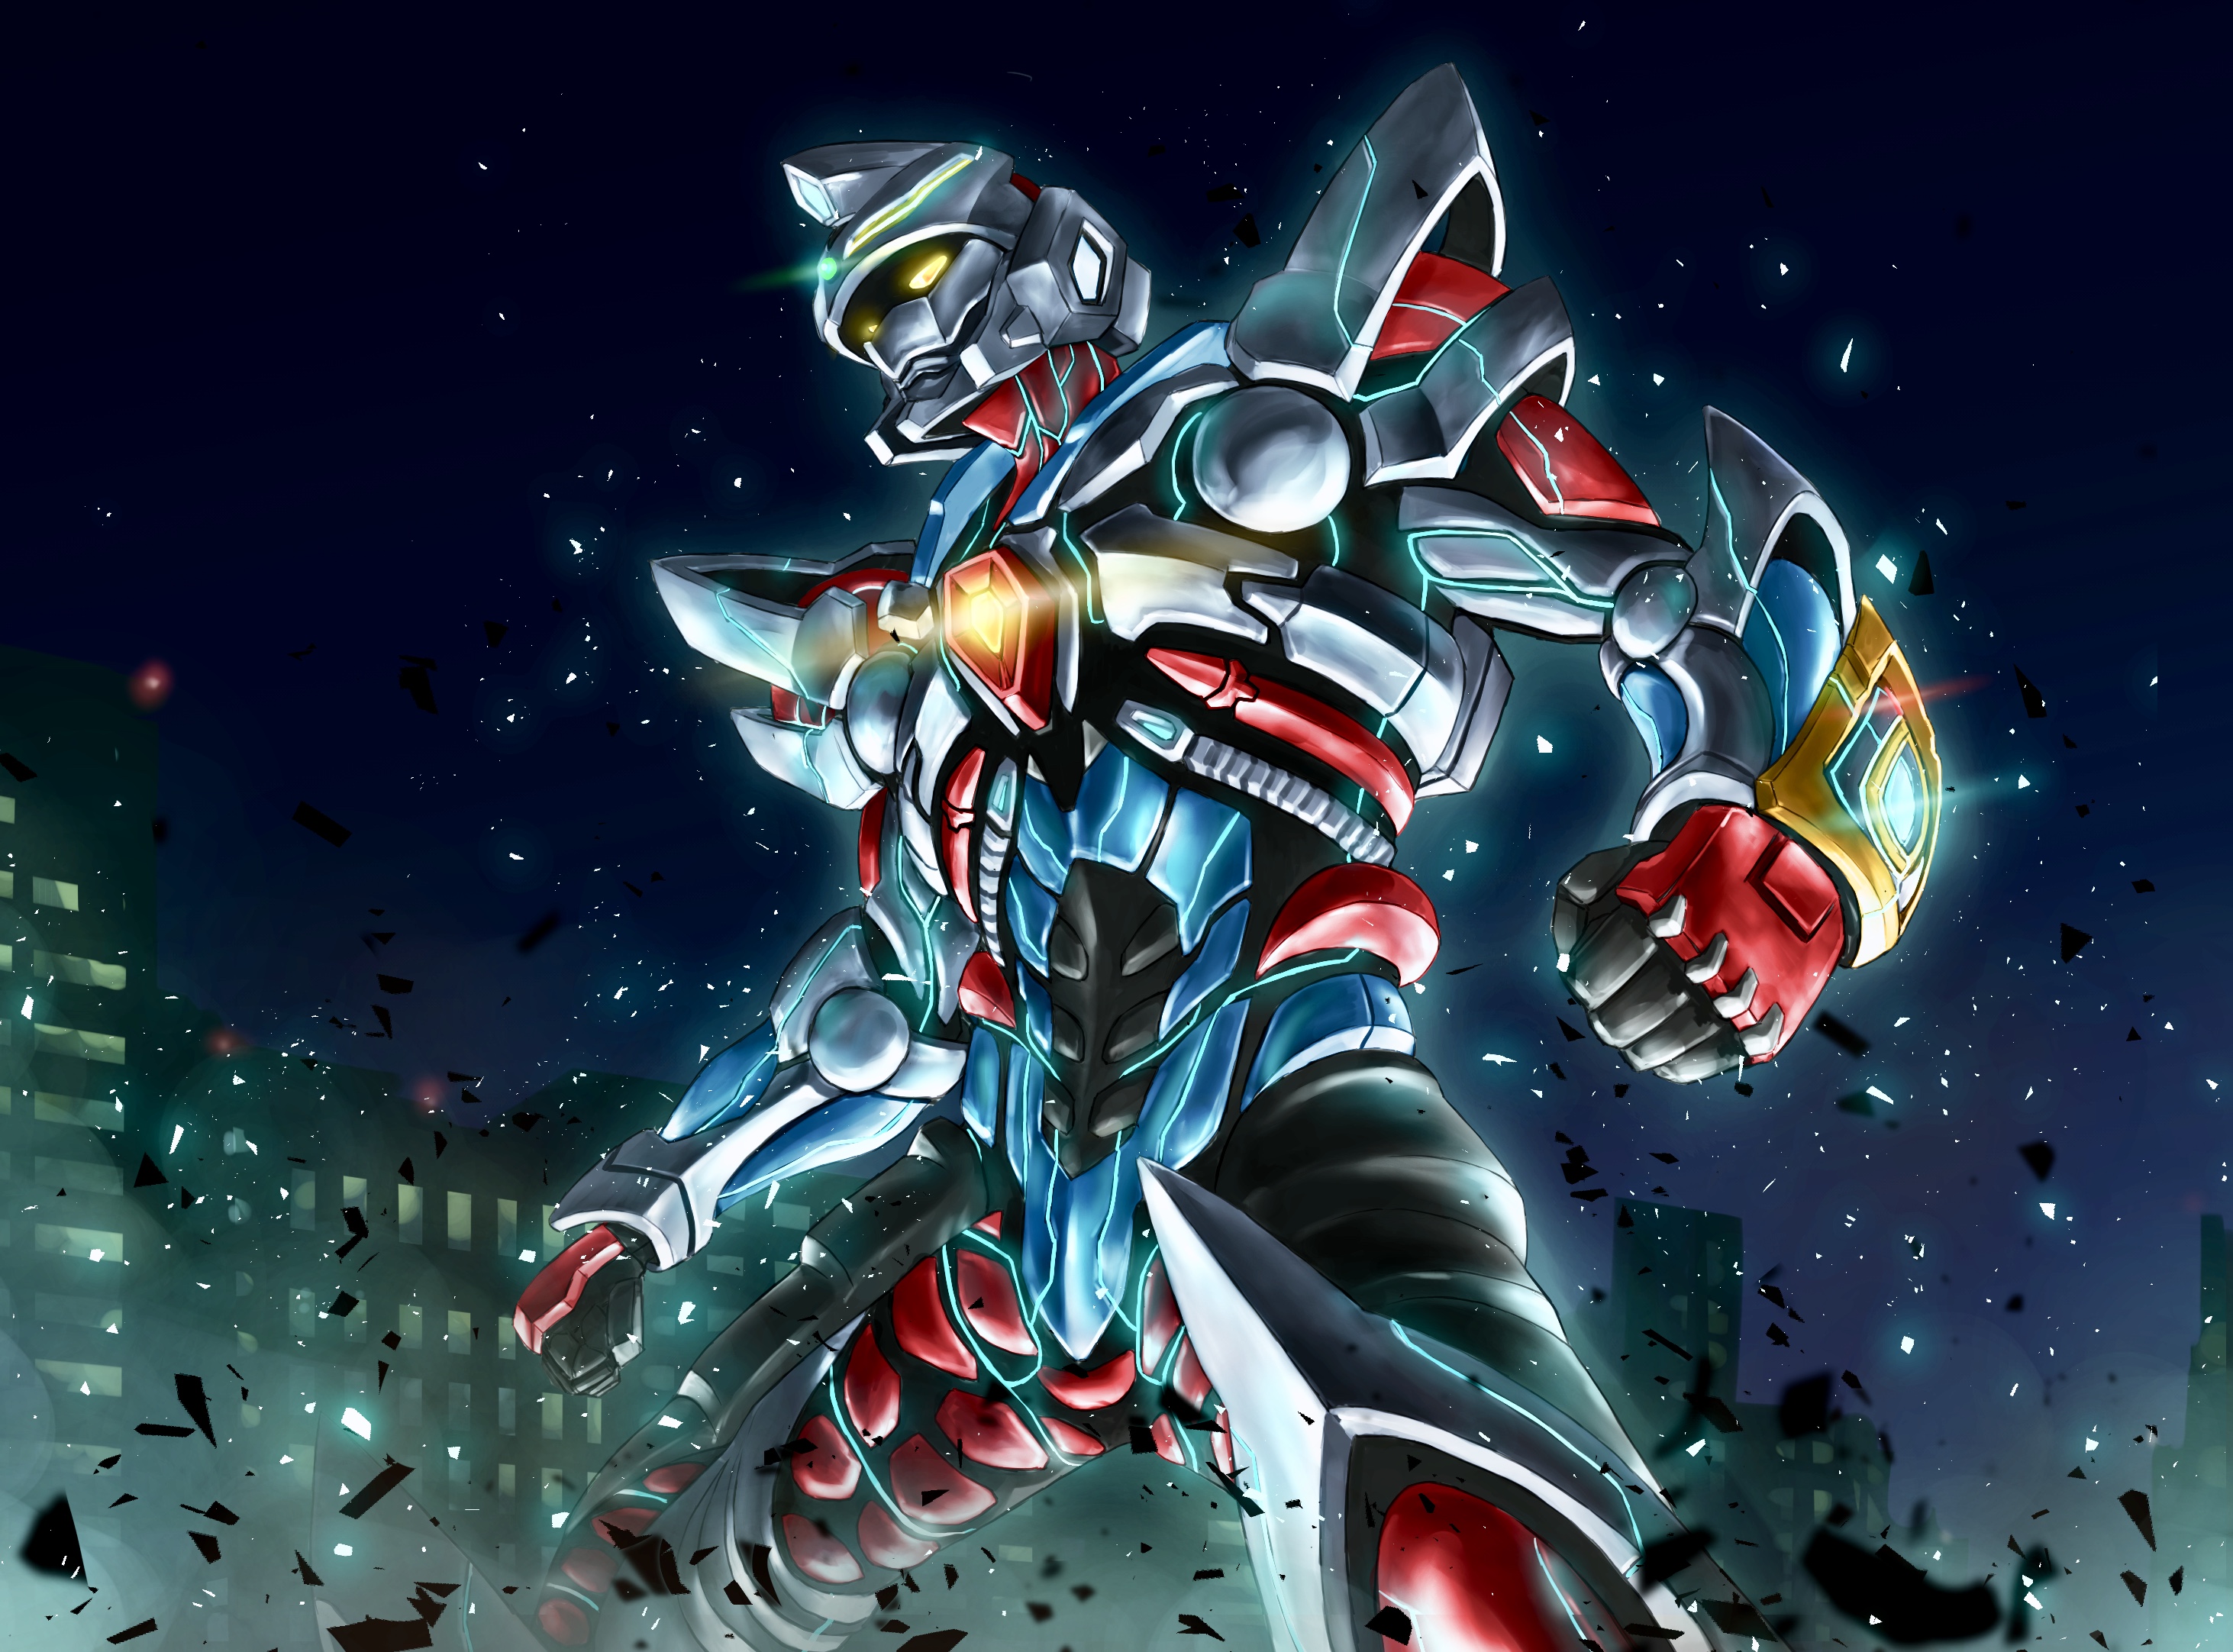 Anime 2925x2164 anime mechs Super Robot Taisen SSSS.GRIDMAN Gridman artwork digital art fan art